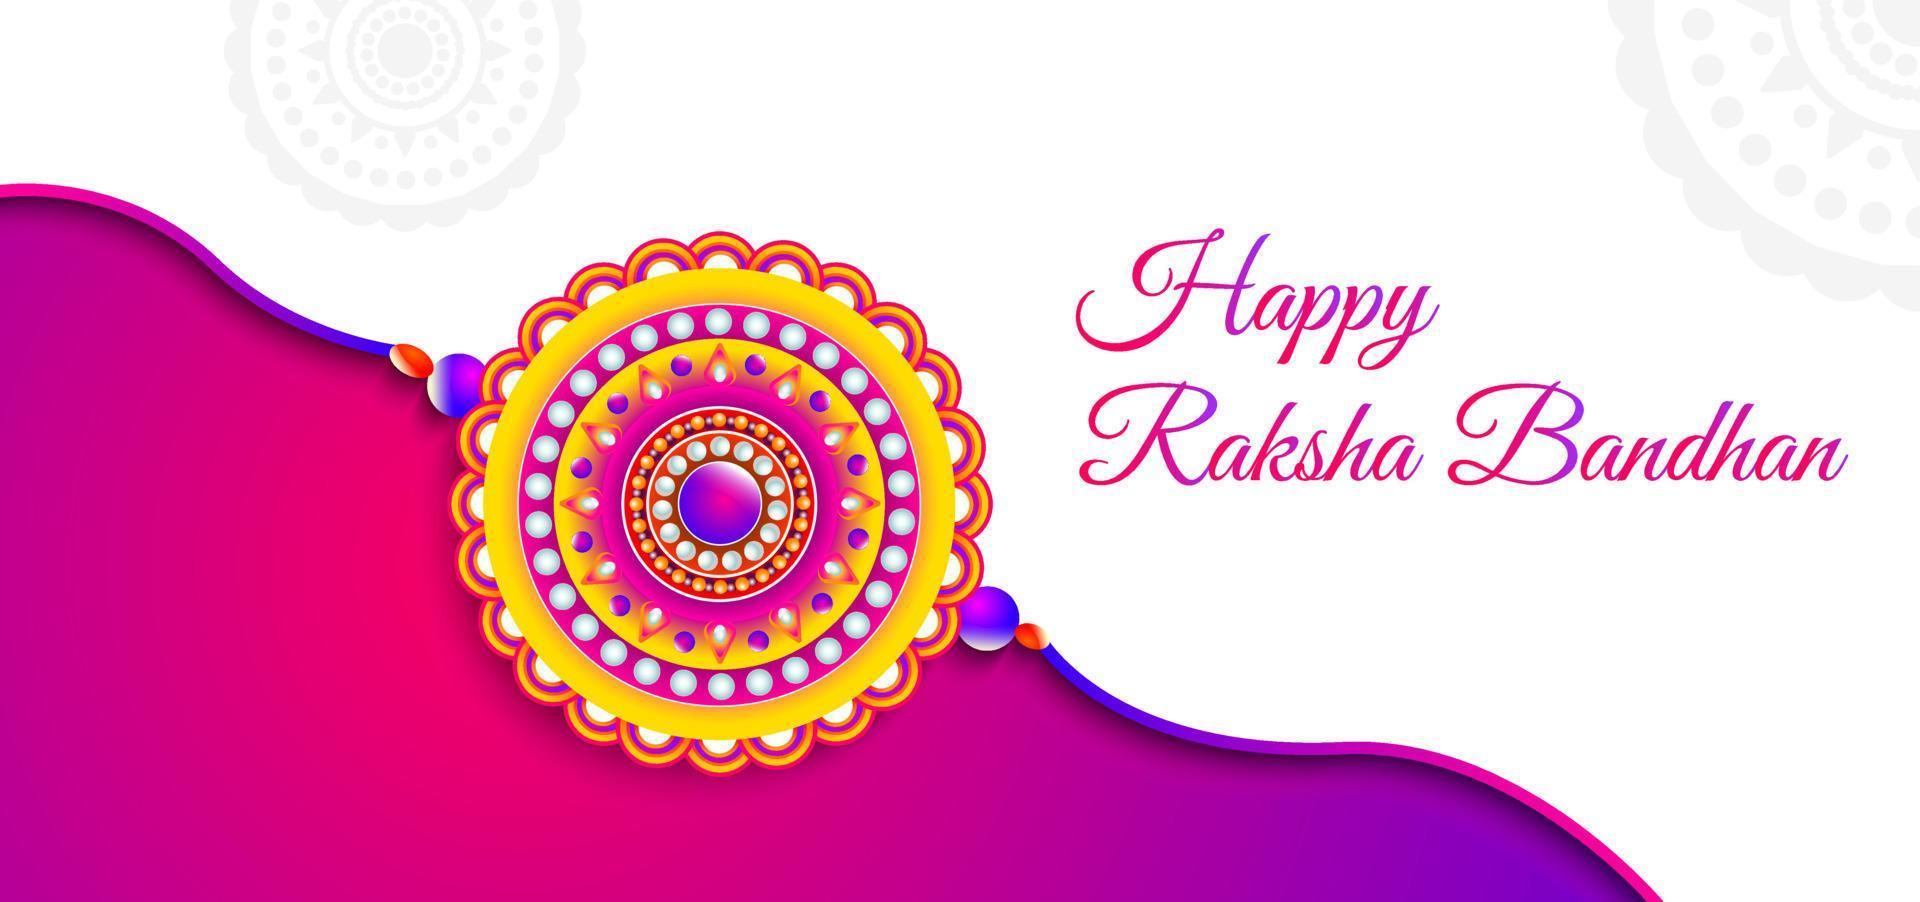 gelukkige raksha bandhan banner rakhi promotionele achtergrond Indiase festival vakantie wenskaart illustratie vector